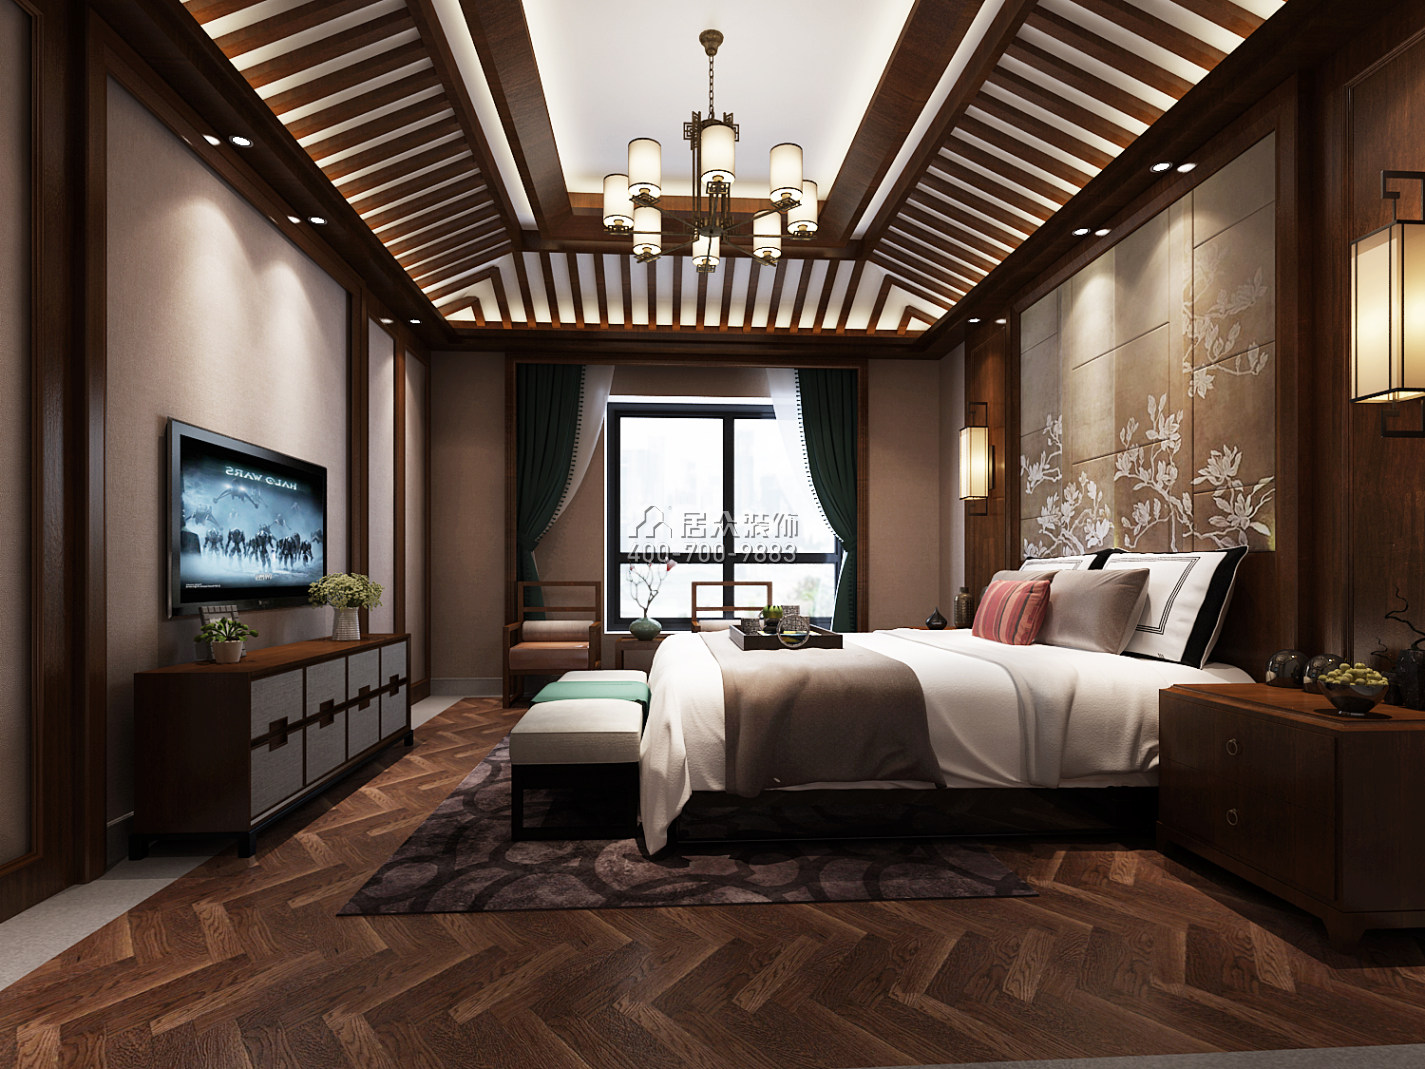 天利天鹅湾420平方米中式风格别墅户型卧室装修效果图